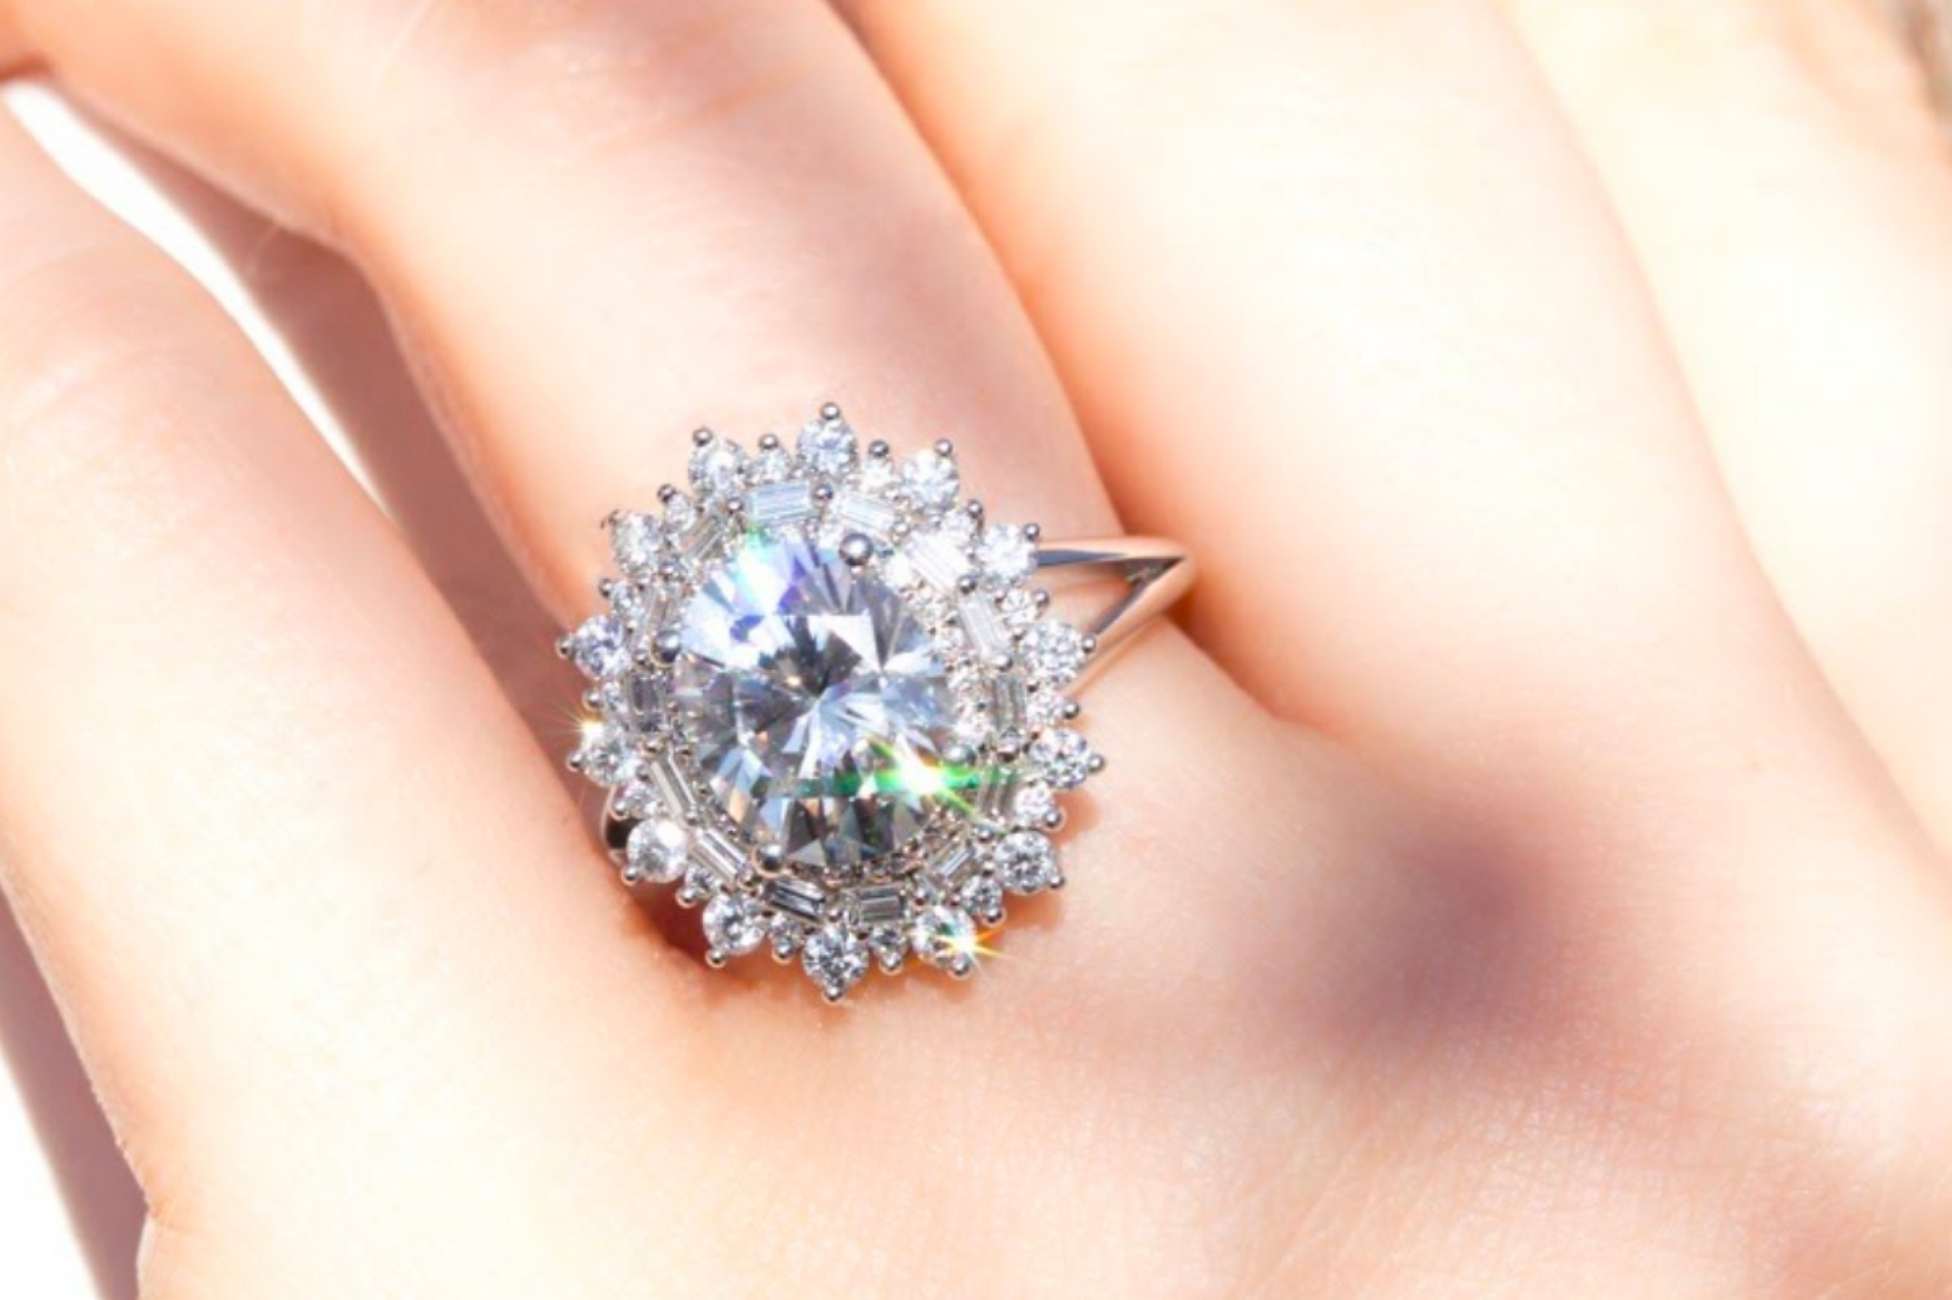 Glamorous engagement ring with triple sunburst halo